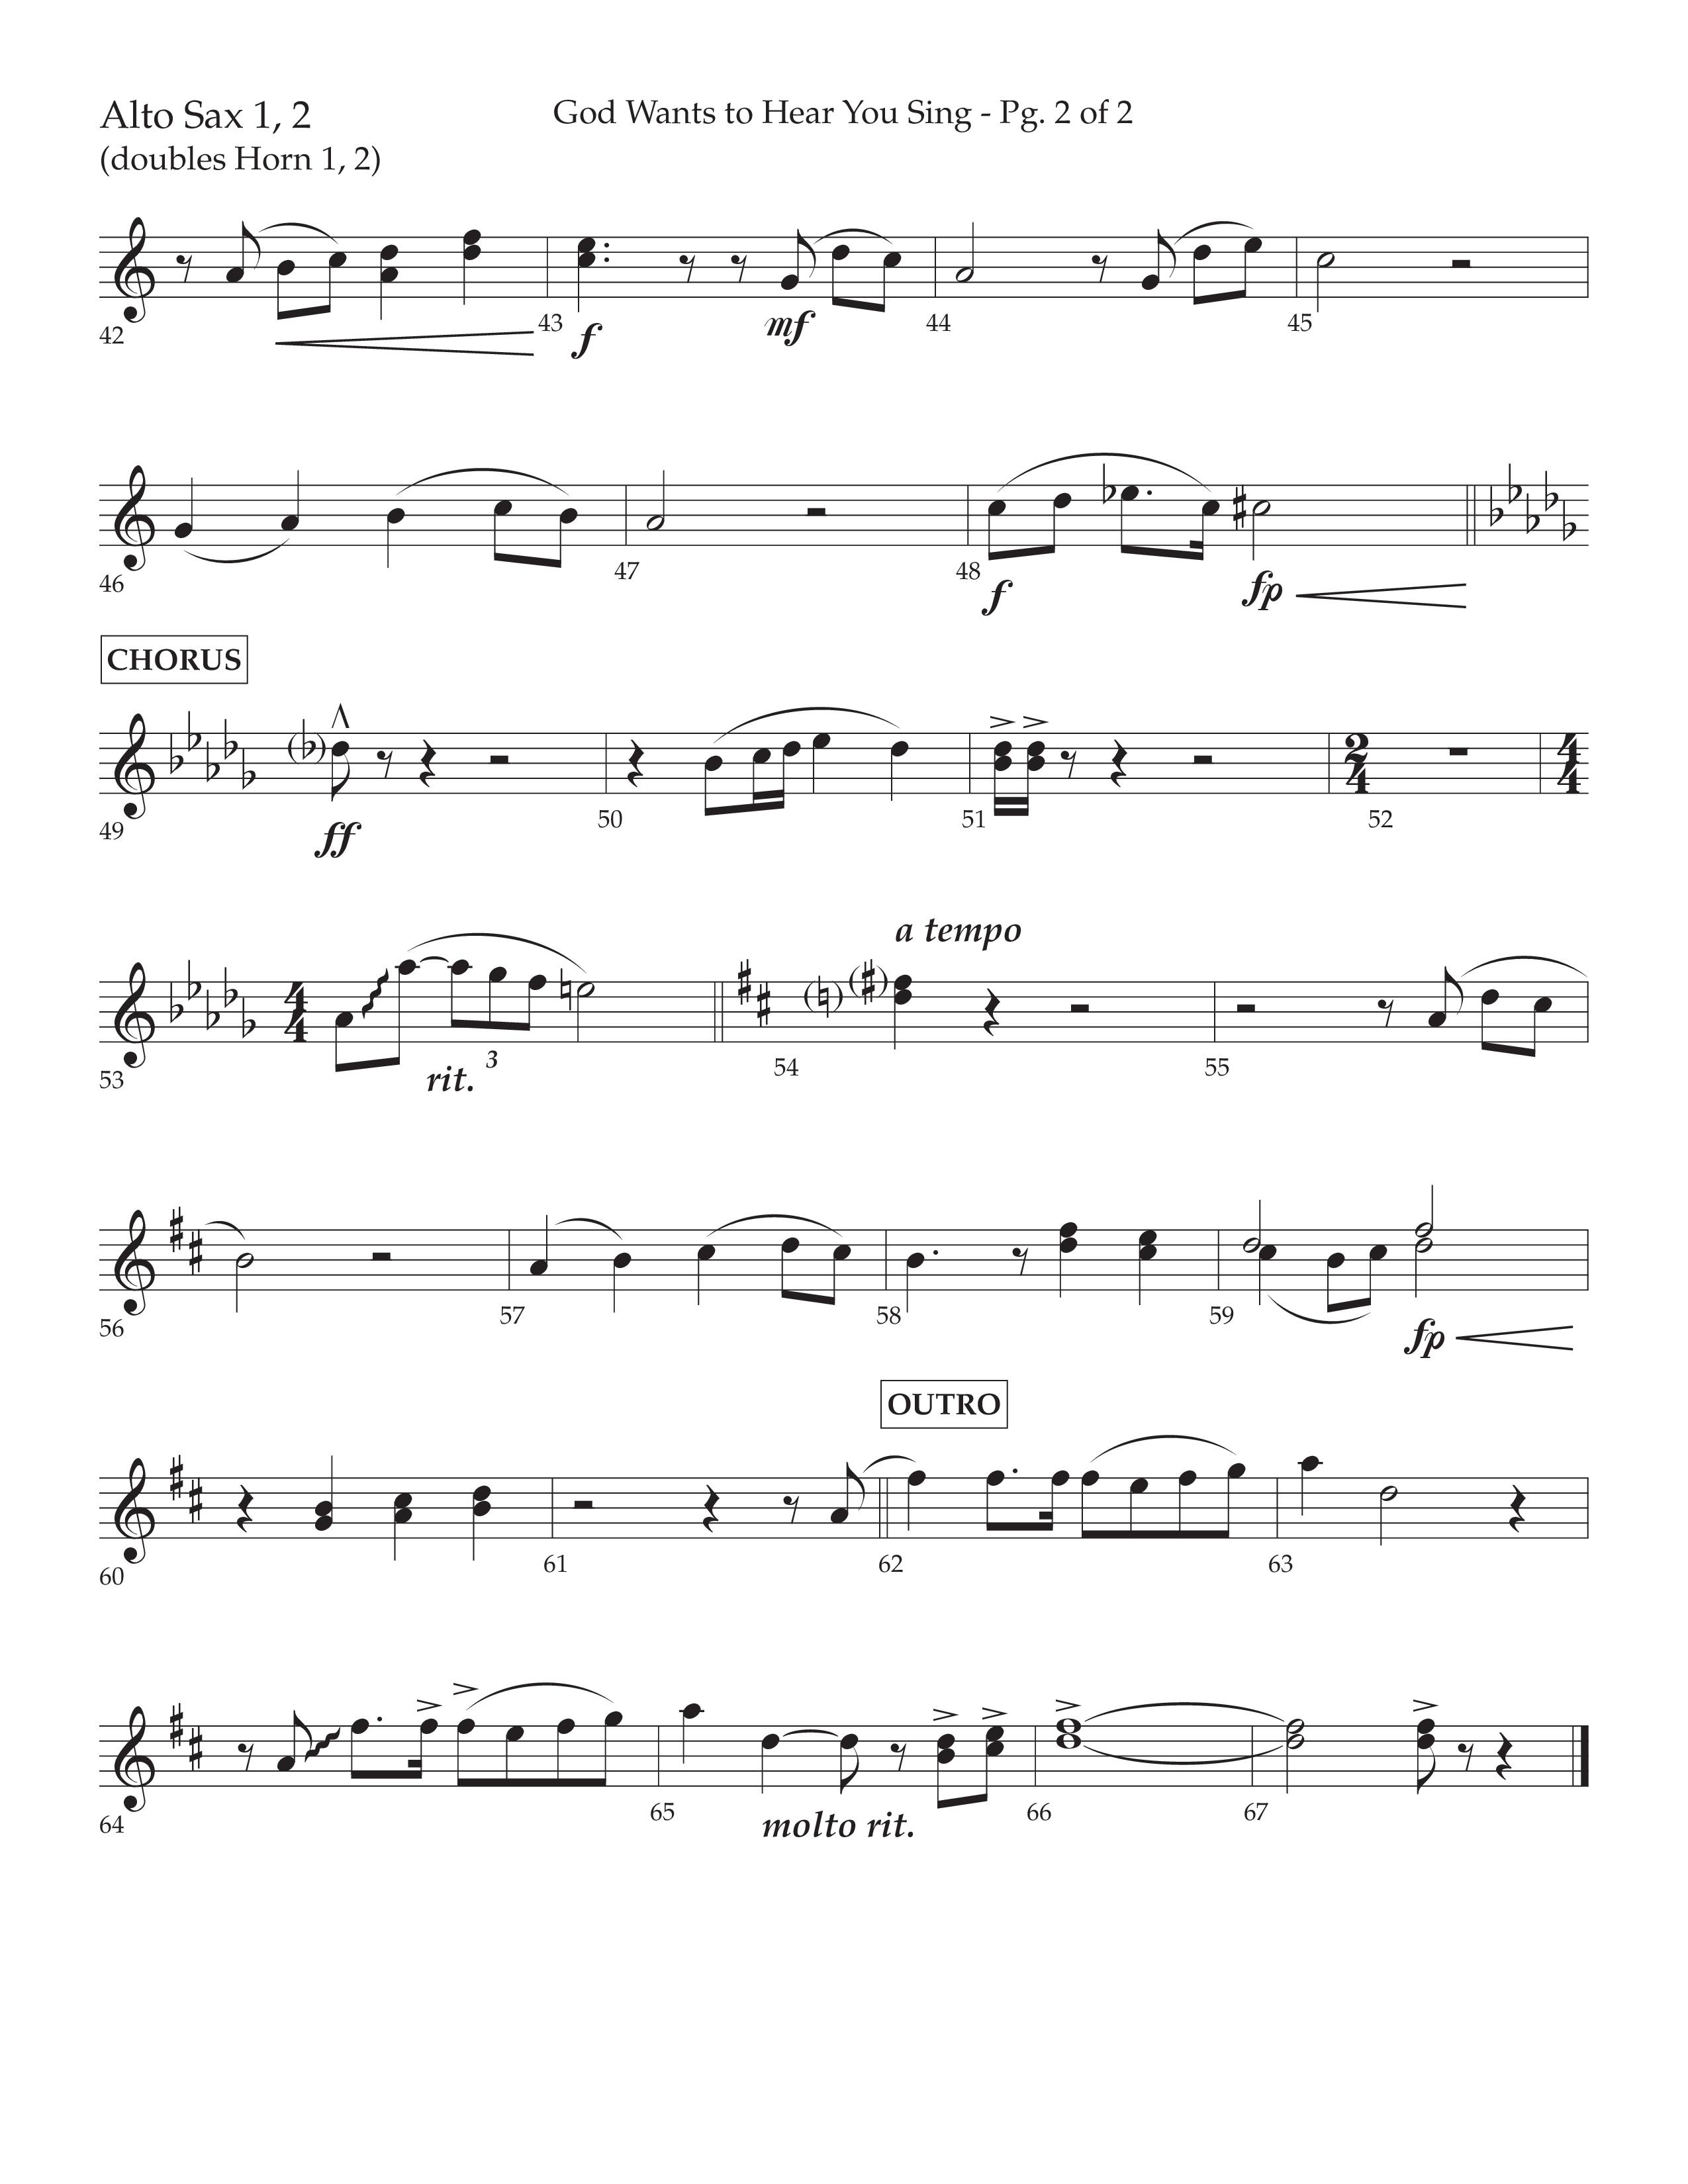 God Wants To Hear You Sing (Choral Anthem SATB) Alto Sax 1/2 (Lifeway Choral / Arr. Bradley Knight)